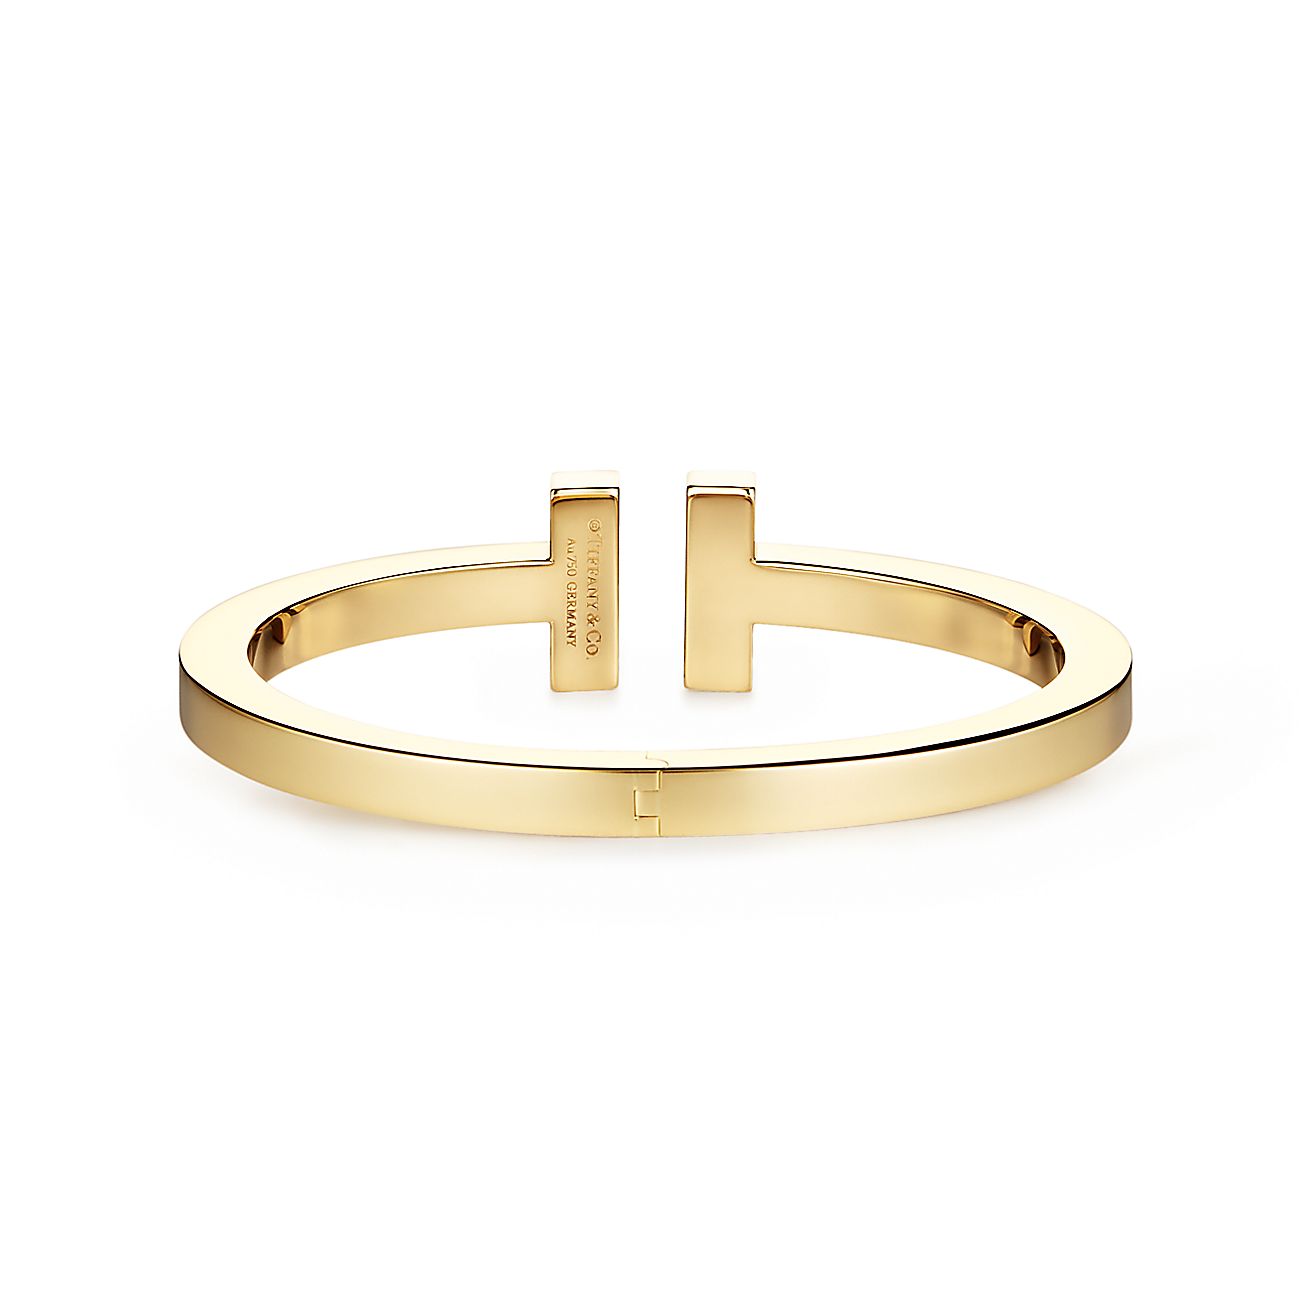 Tiffany T Square Bracelet in 18K Gold, Medium